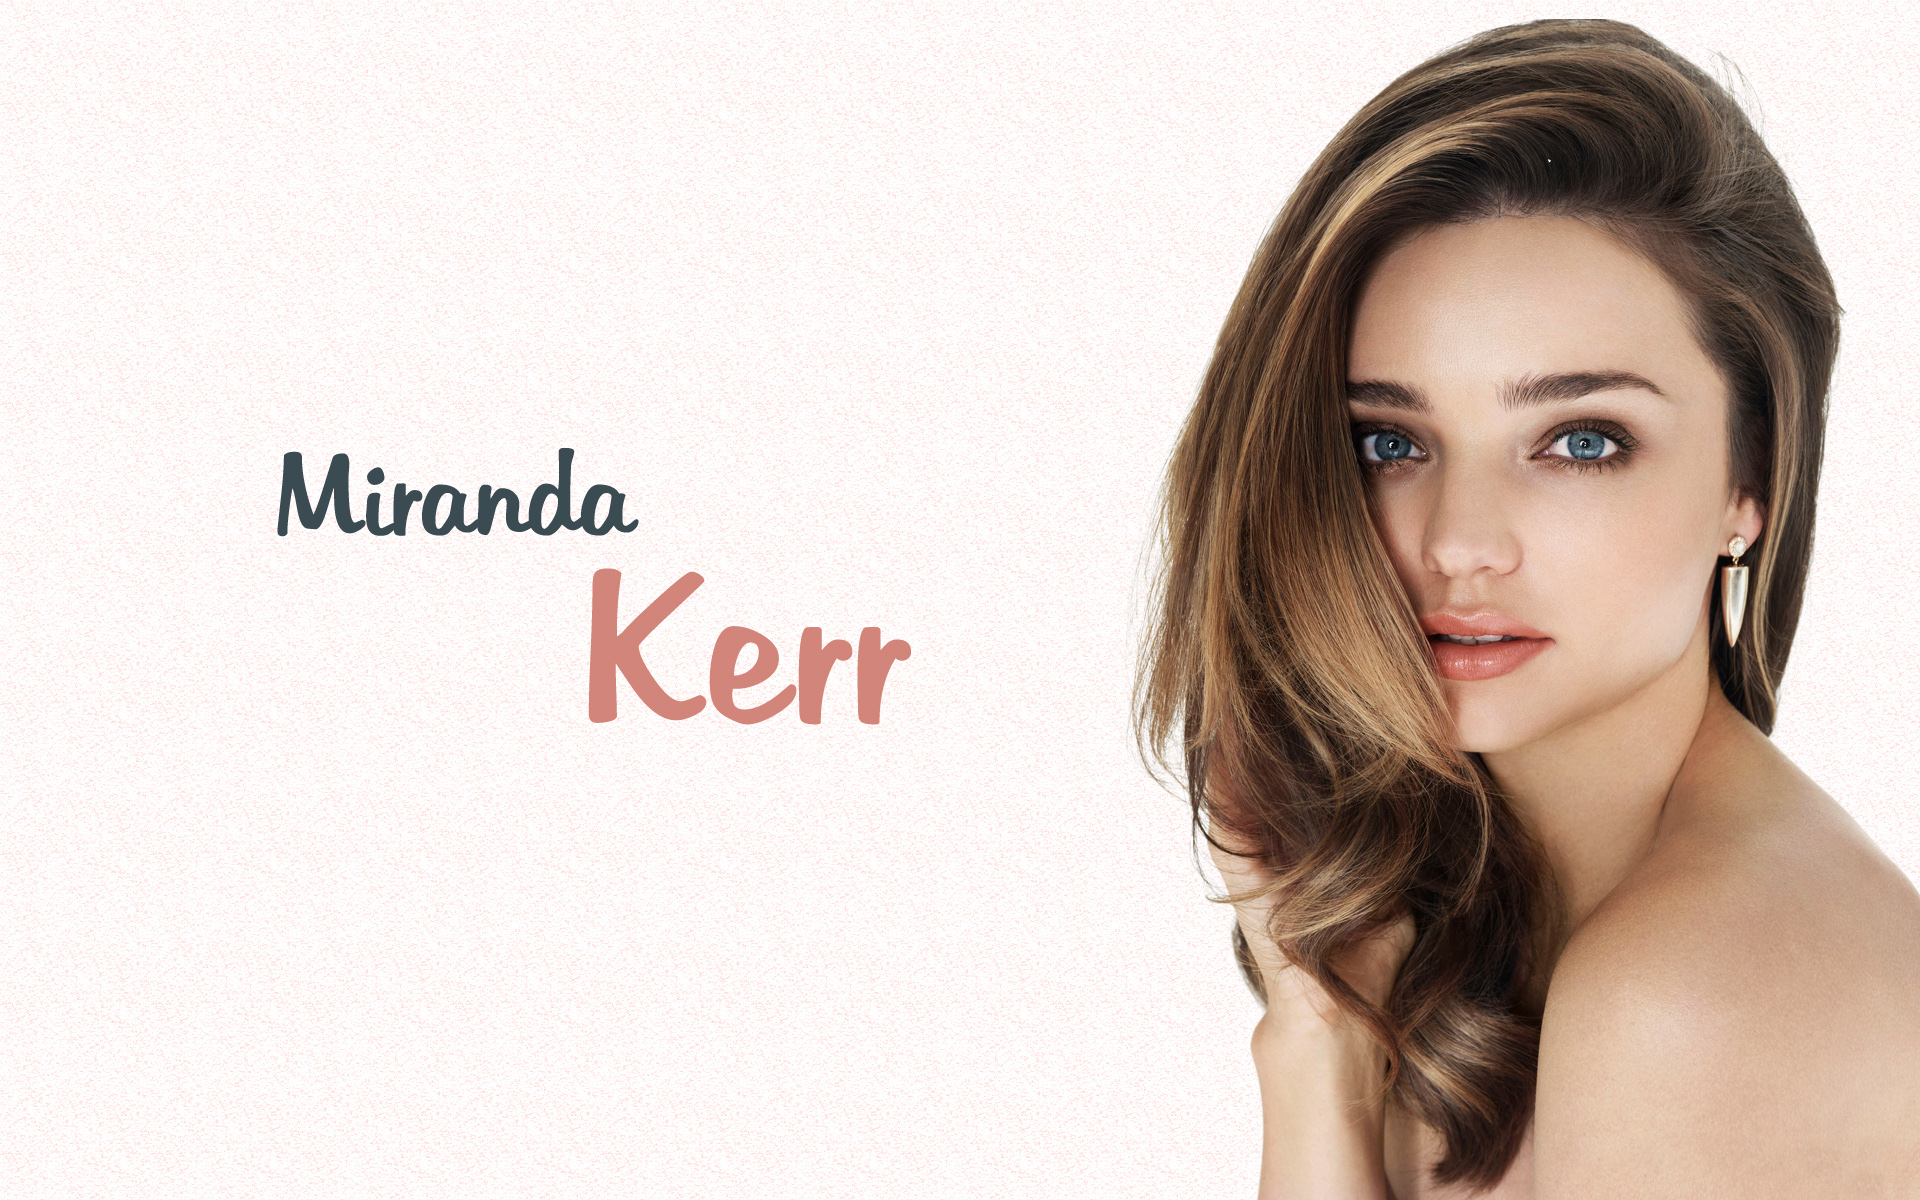 Miranda Kerr - Miranda Kerr Wallpaper (34525316) - Fanpop